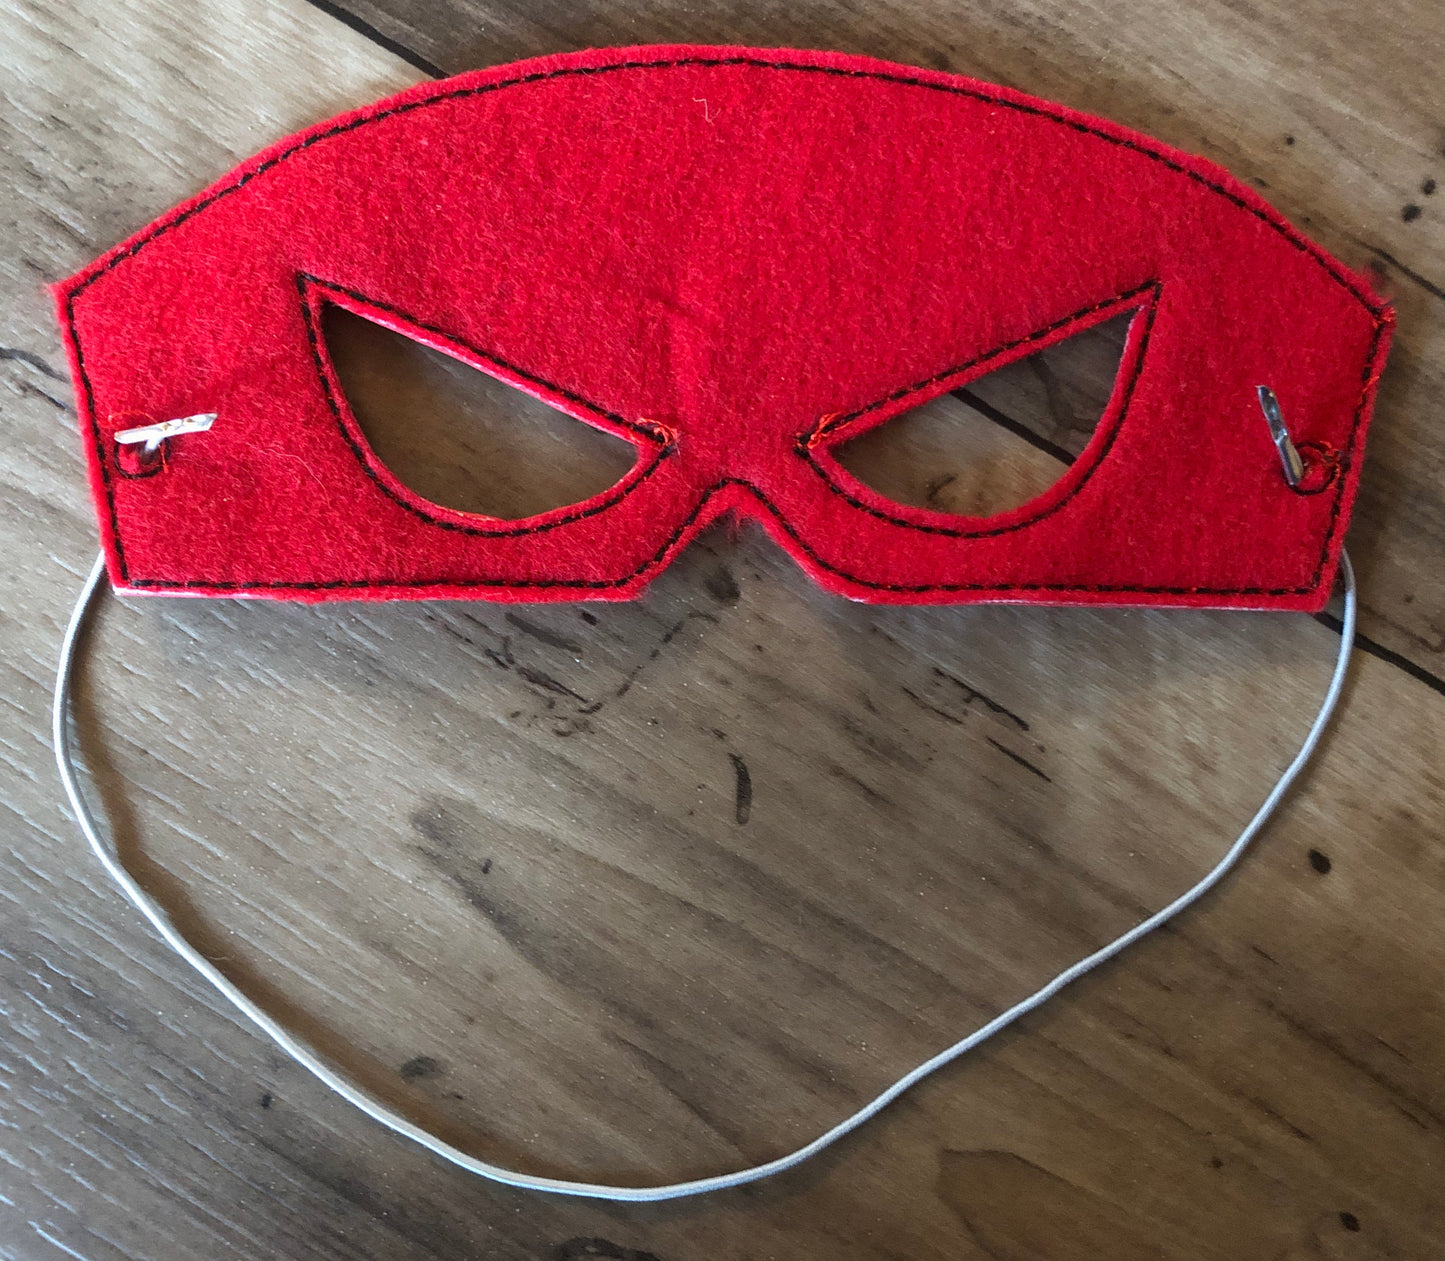 Spider Man Vinyl Pretend Play Children’s Mask